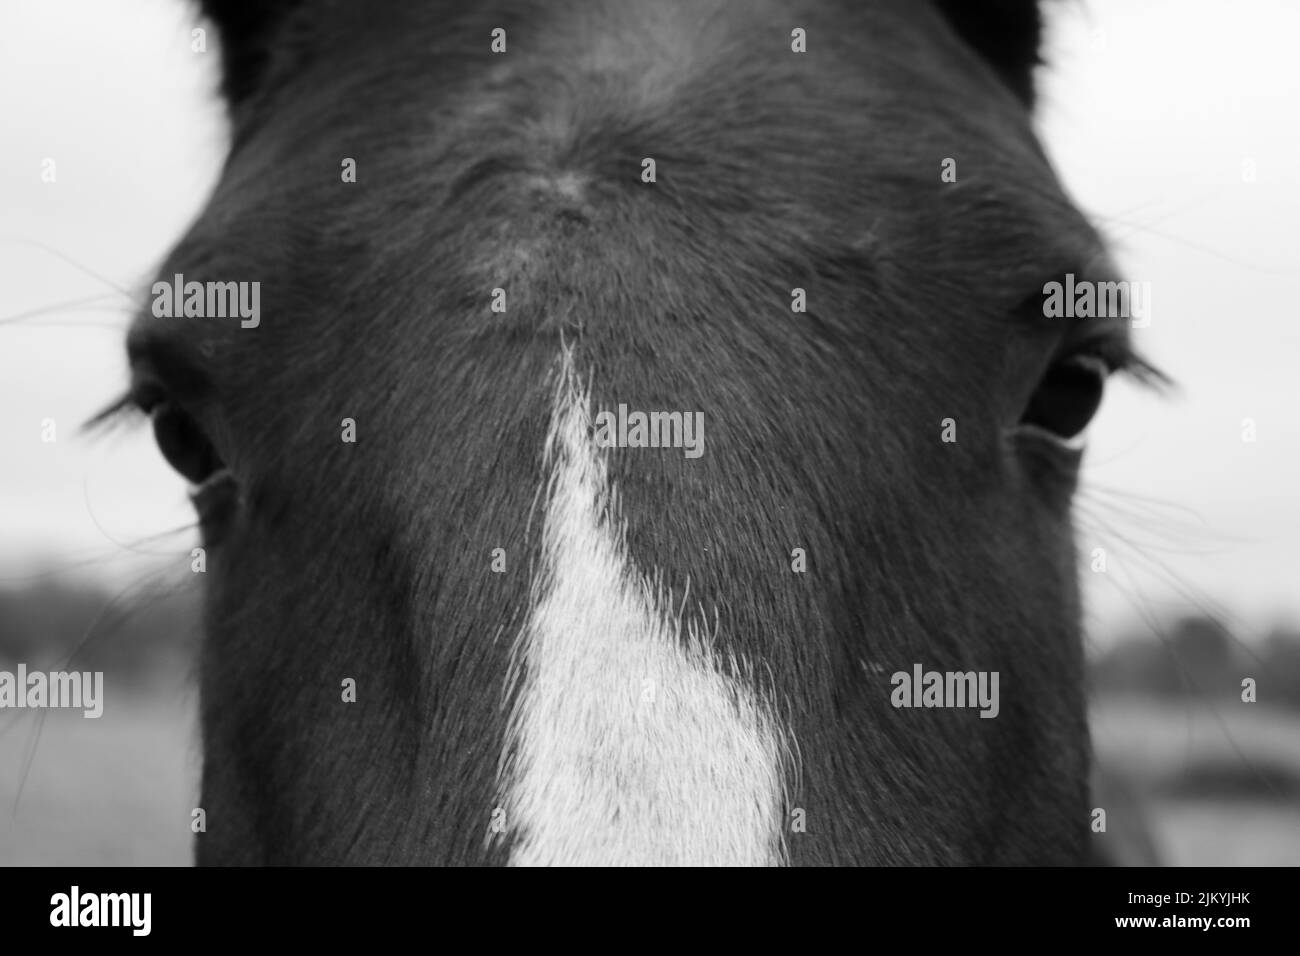 Un ritratto in scala di grigi vicino alla testa del cavallo e agli occhi Foto Stock